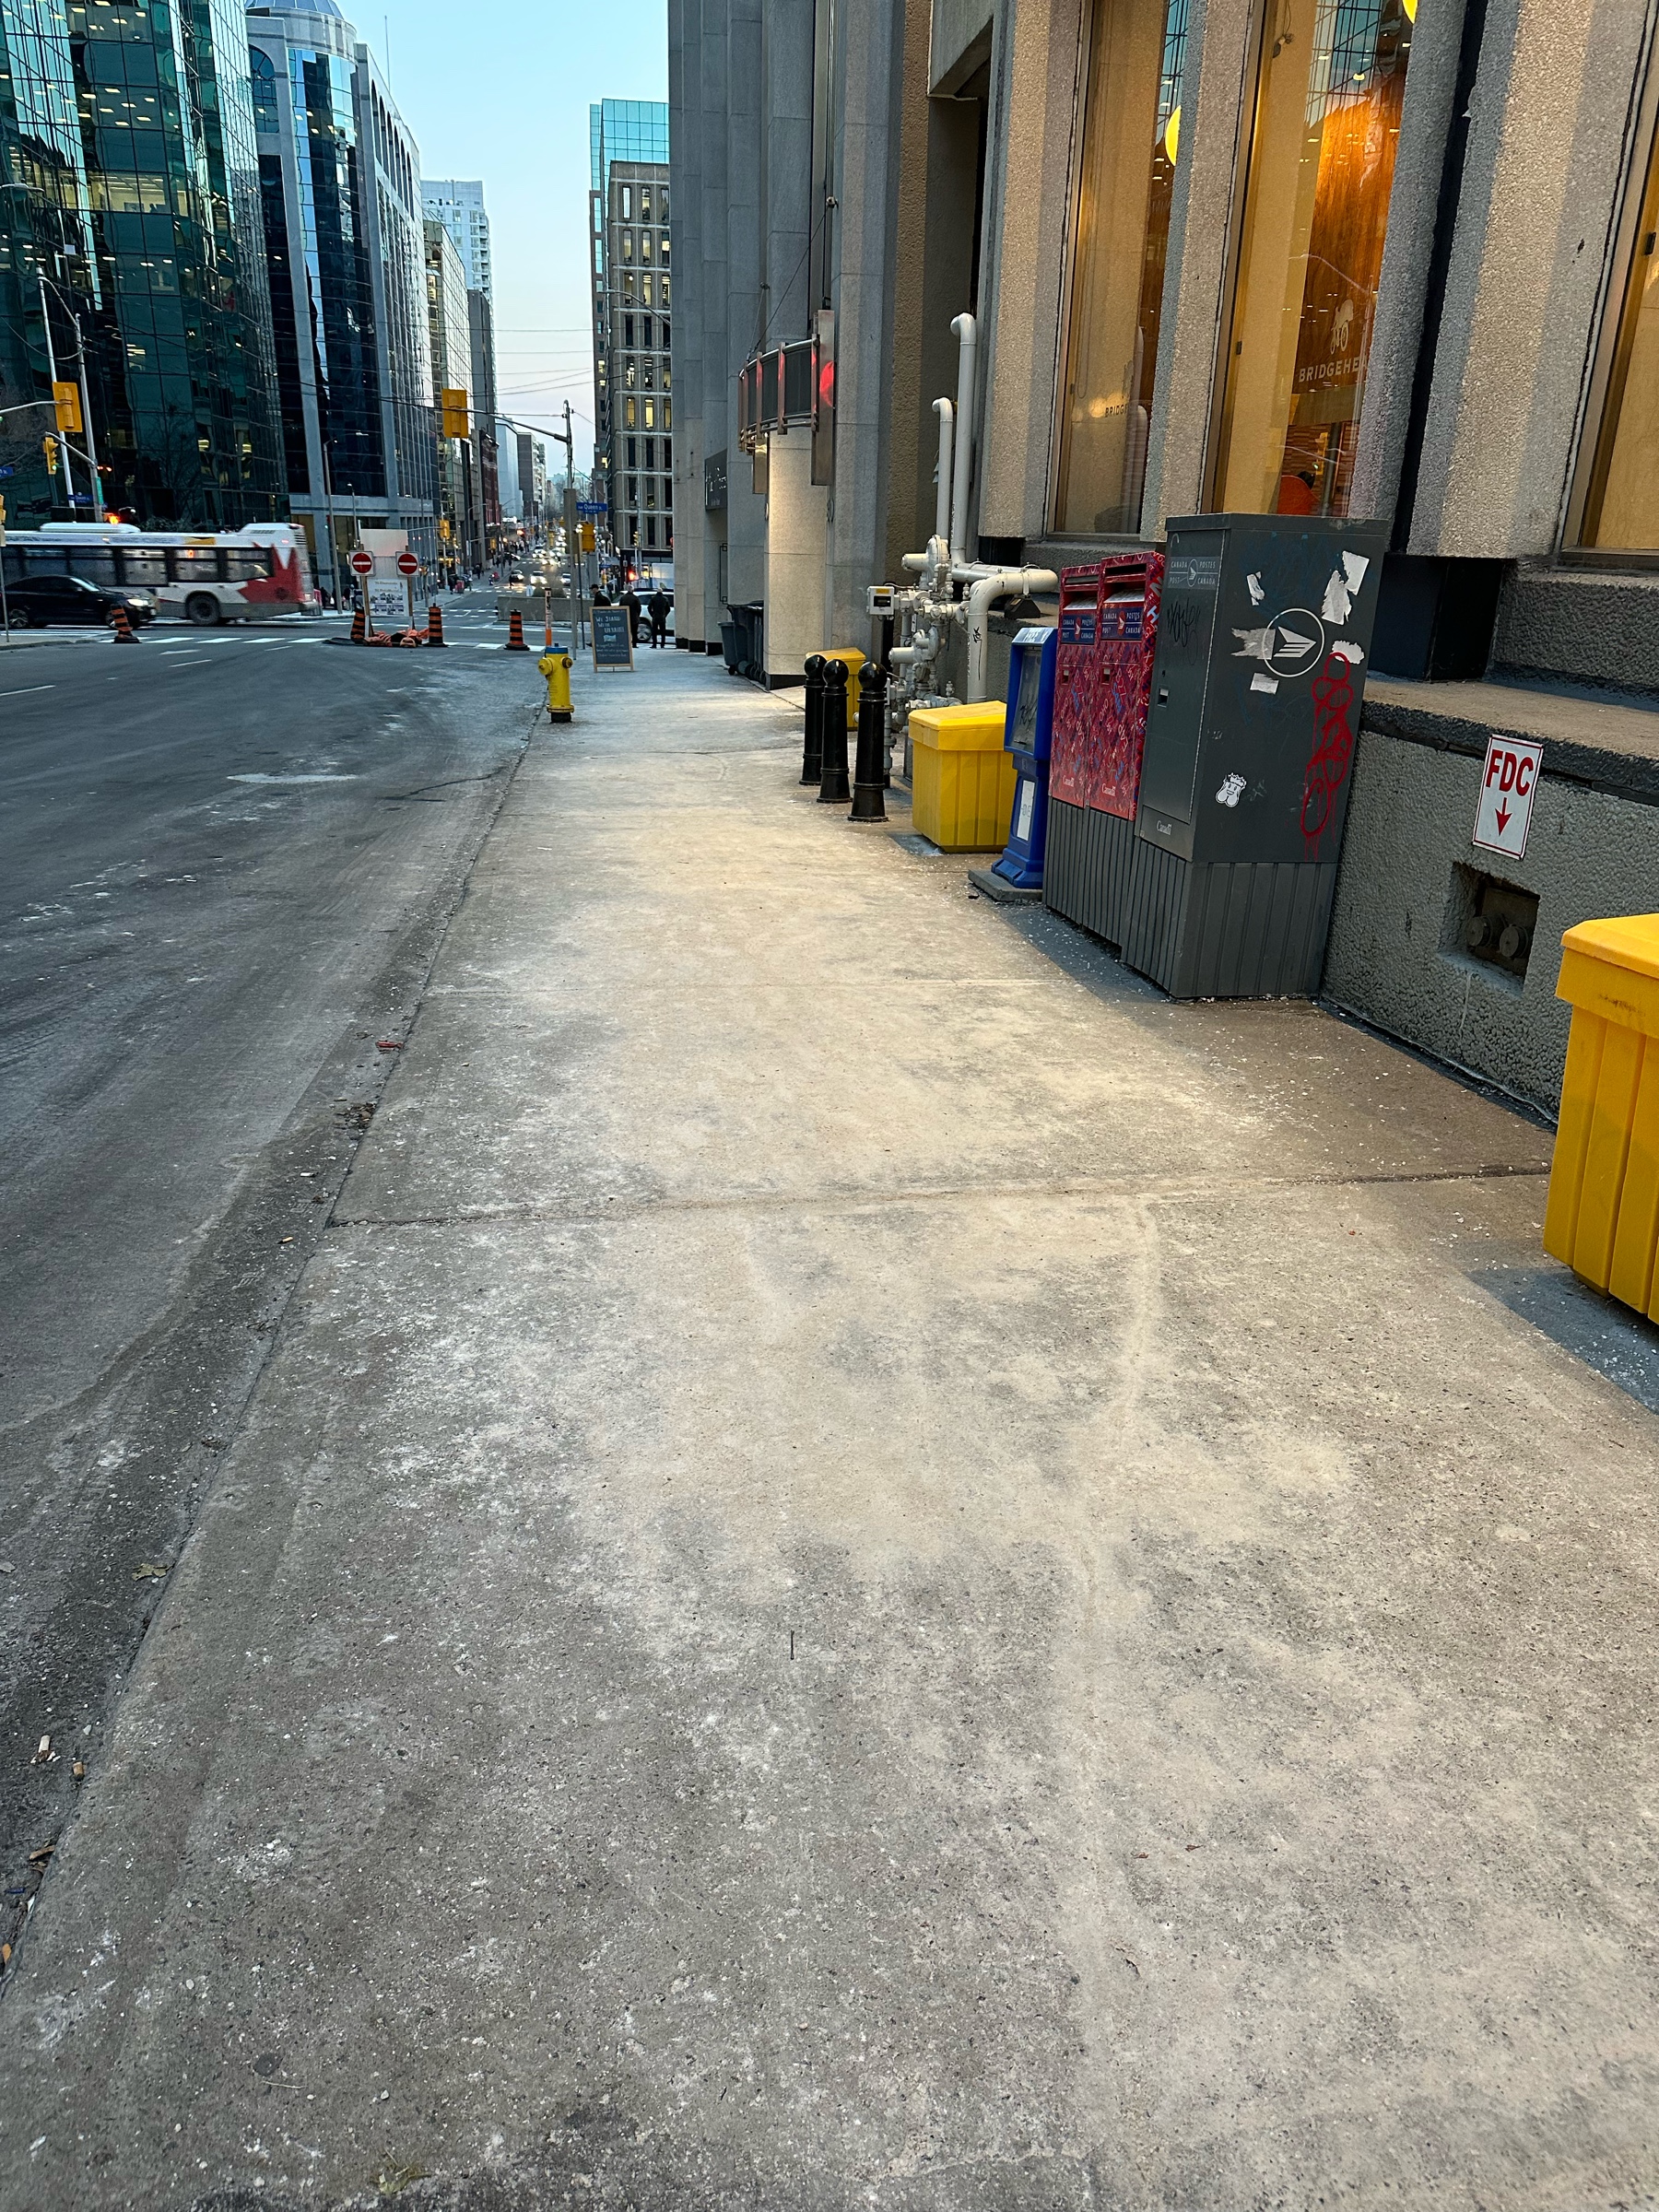 A grey sidewalk turned white with salt.